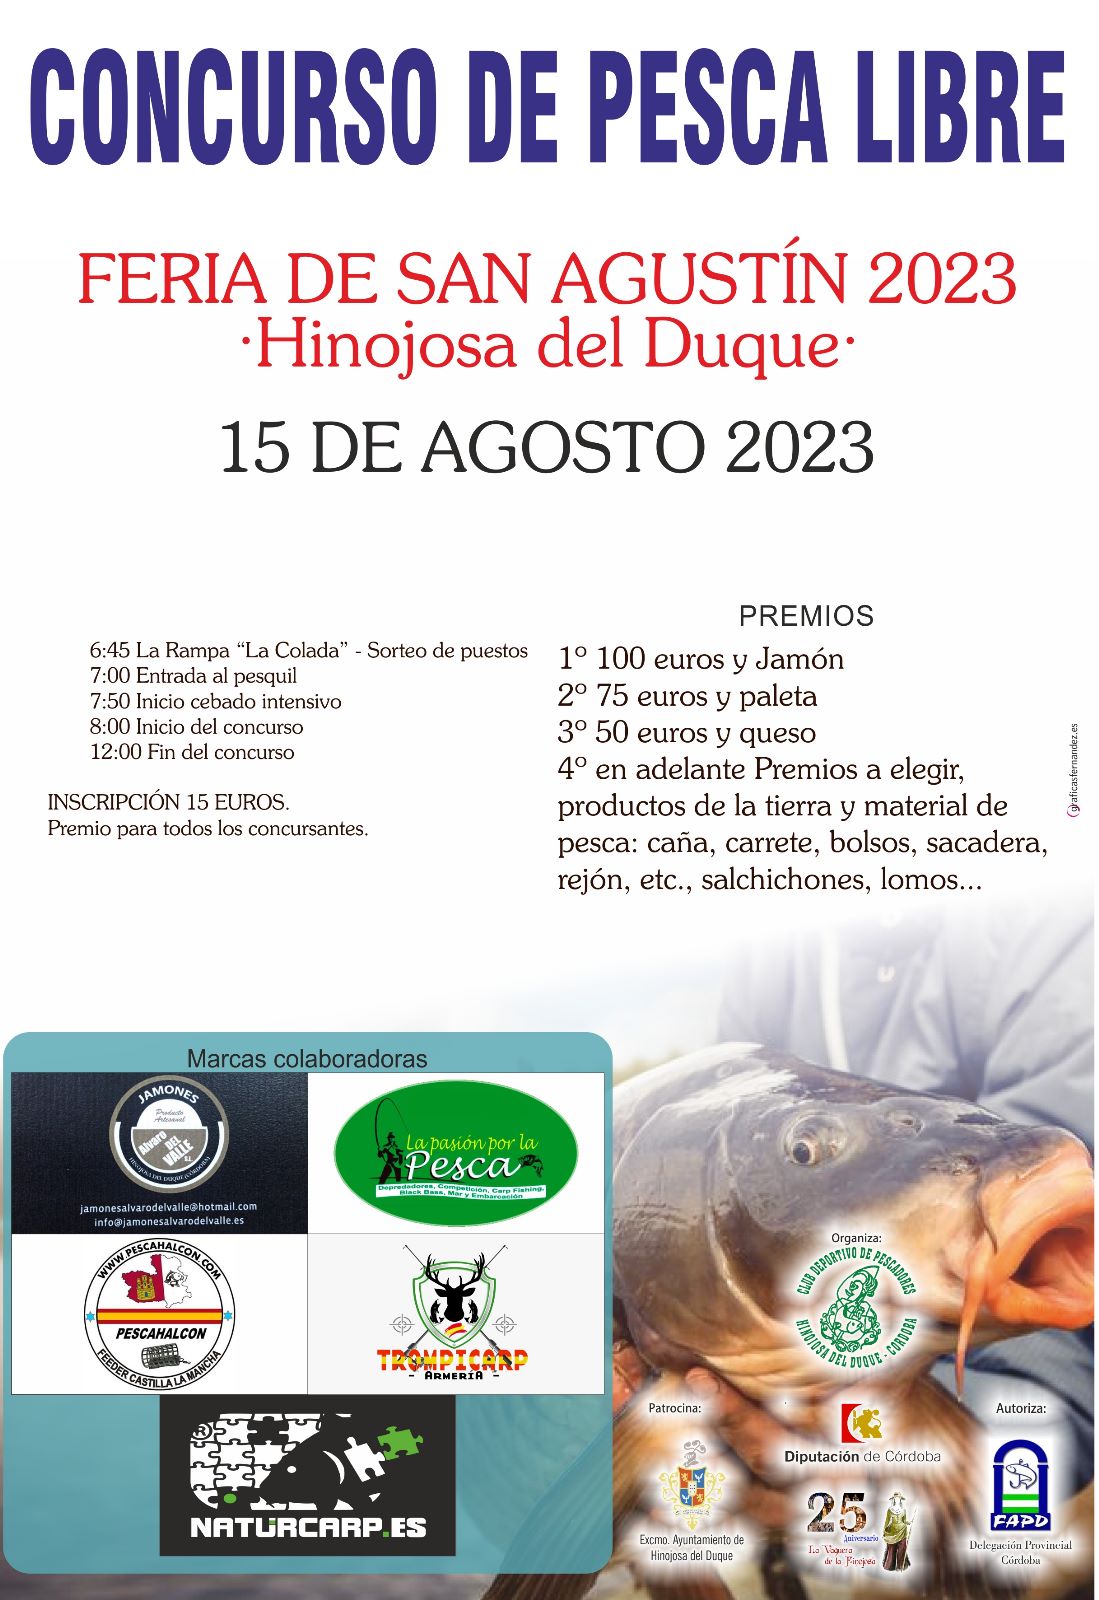 CARTEL CONCURSO DE PESCA LIBRE FERIA DE SAN AGUSTIN 2023